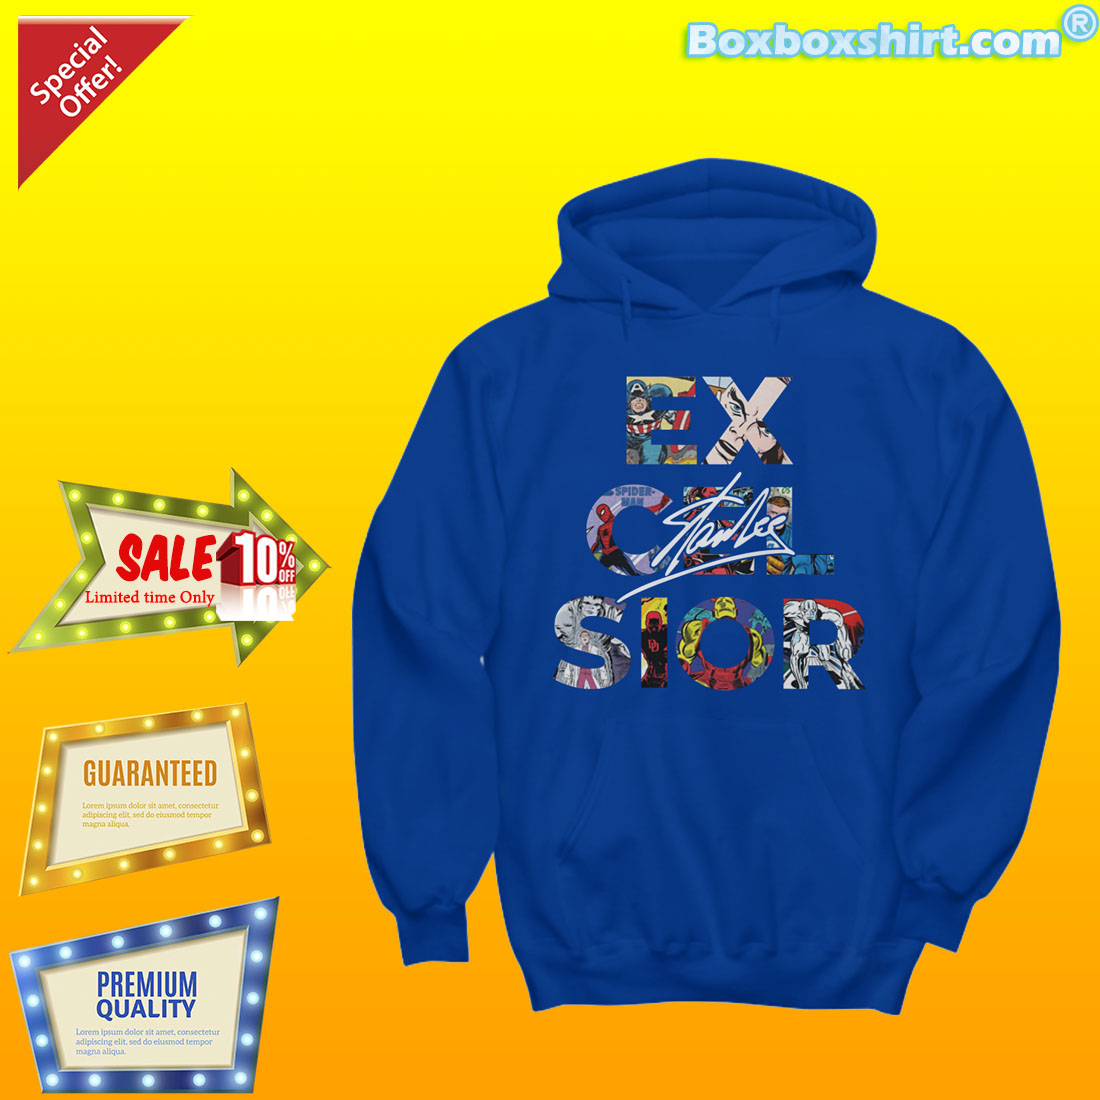 Excelsior Stan Lee shirt